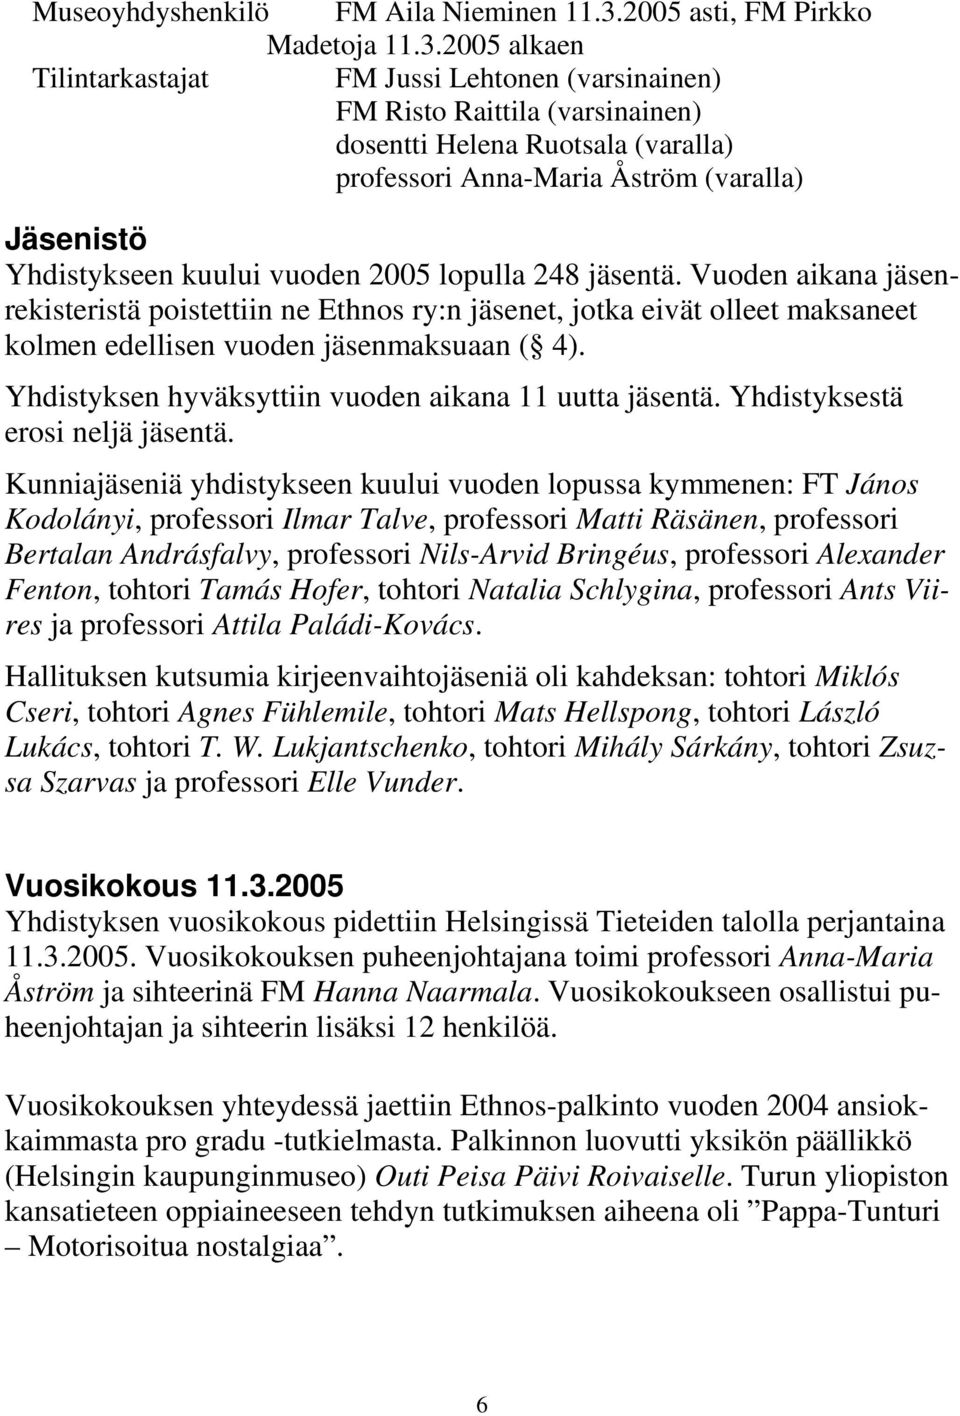 2005 alkaen Tilintarkastajat FM Jussi Lehtonen (varsinainen) FM Risto Raittila (varsinainen) dosentti Helena Ruotsala (varalla) professori Anna-Maria Åström (varalla) Jäsenistö Yhdistykseen kuului